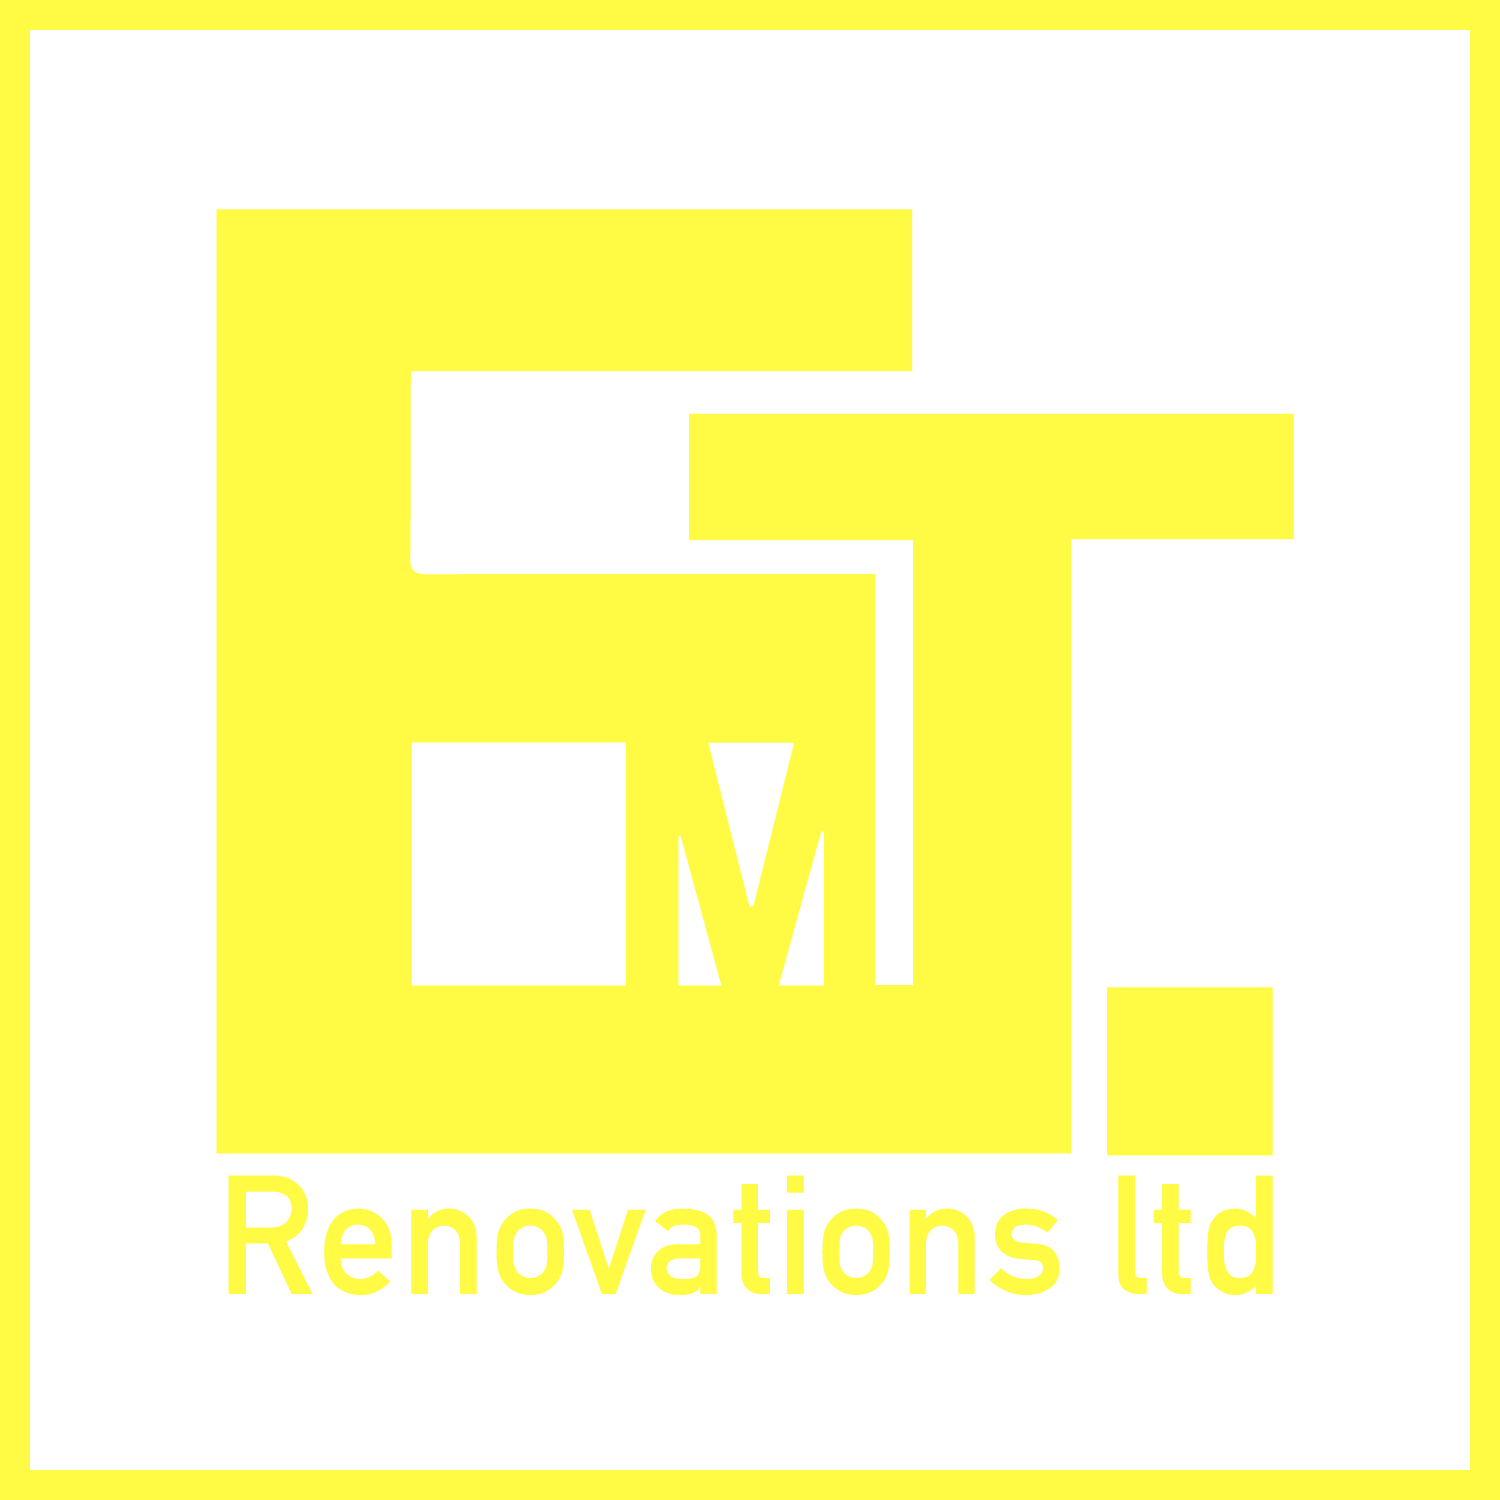 EMT Renovations Ltd